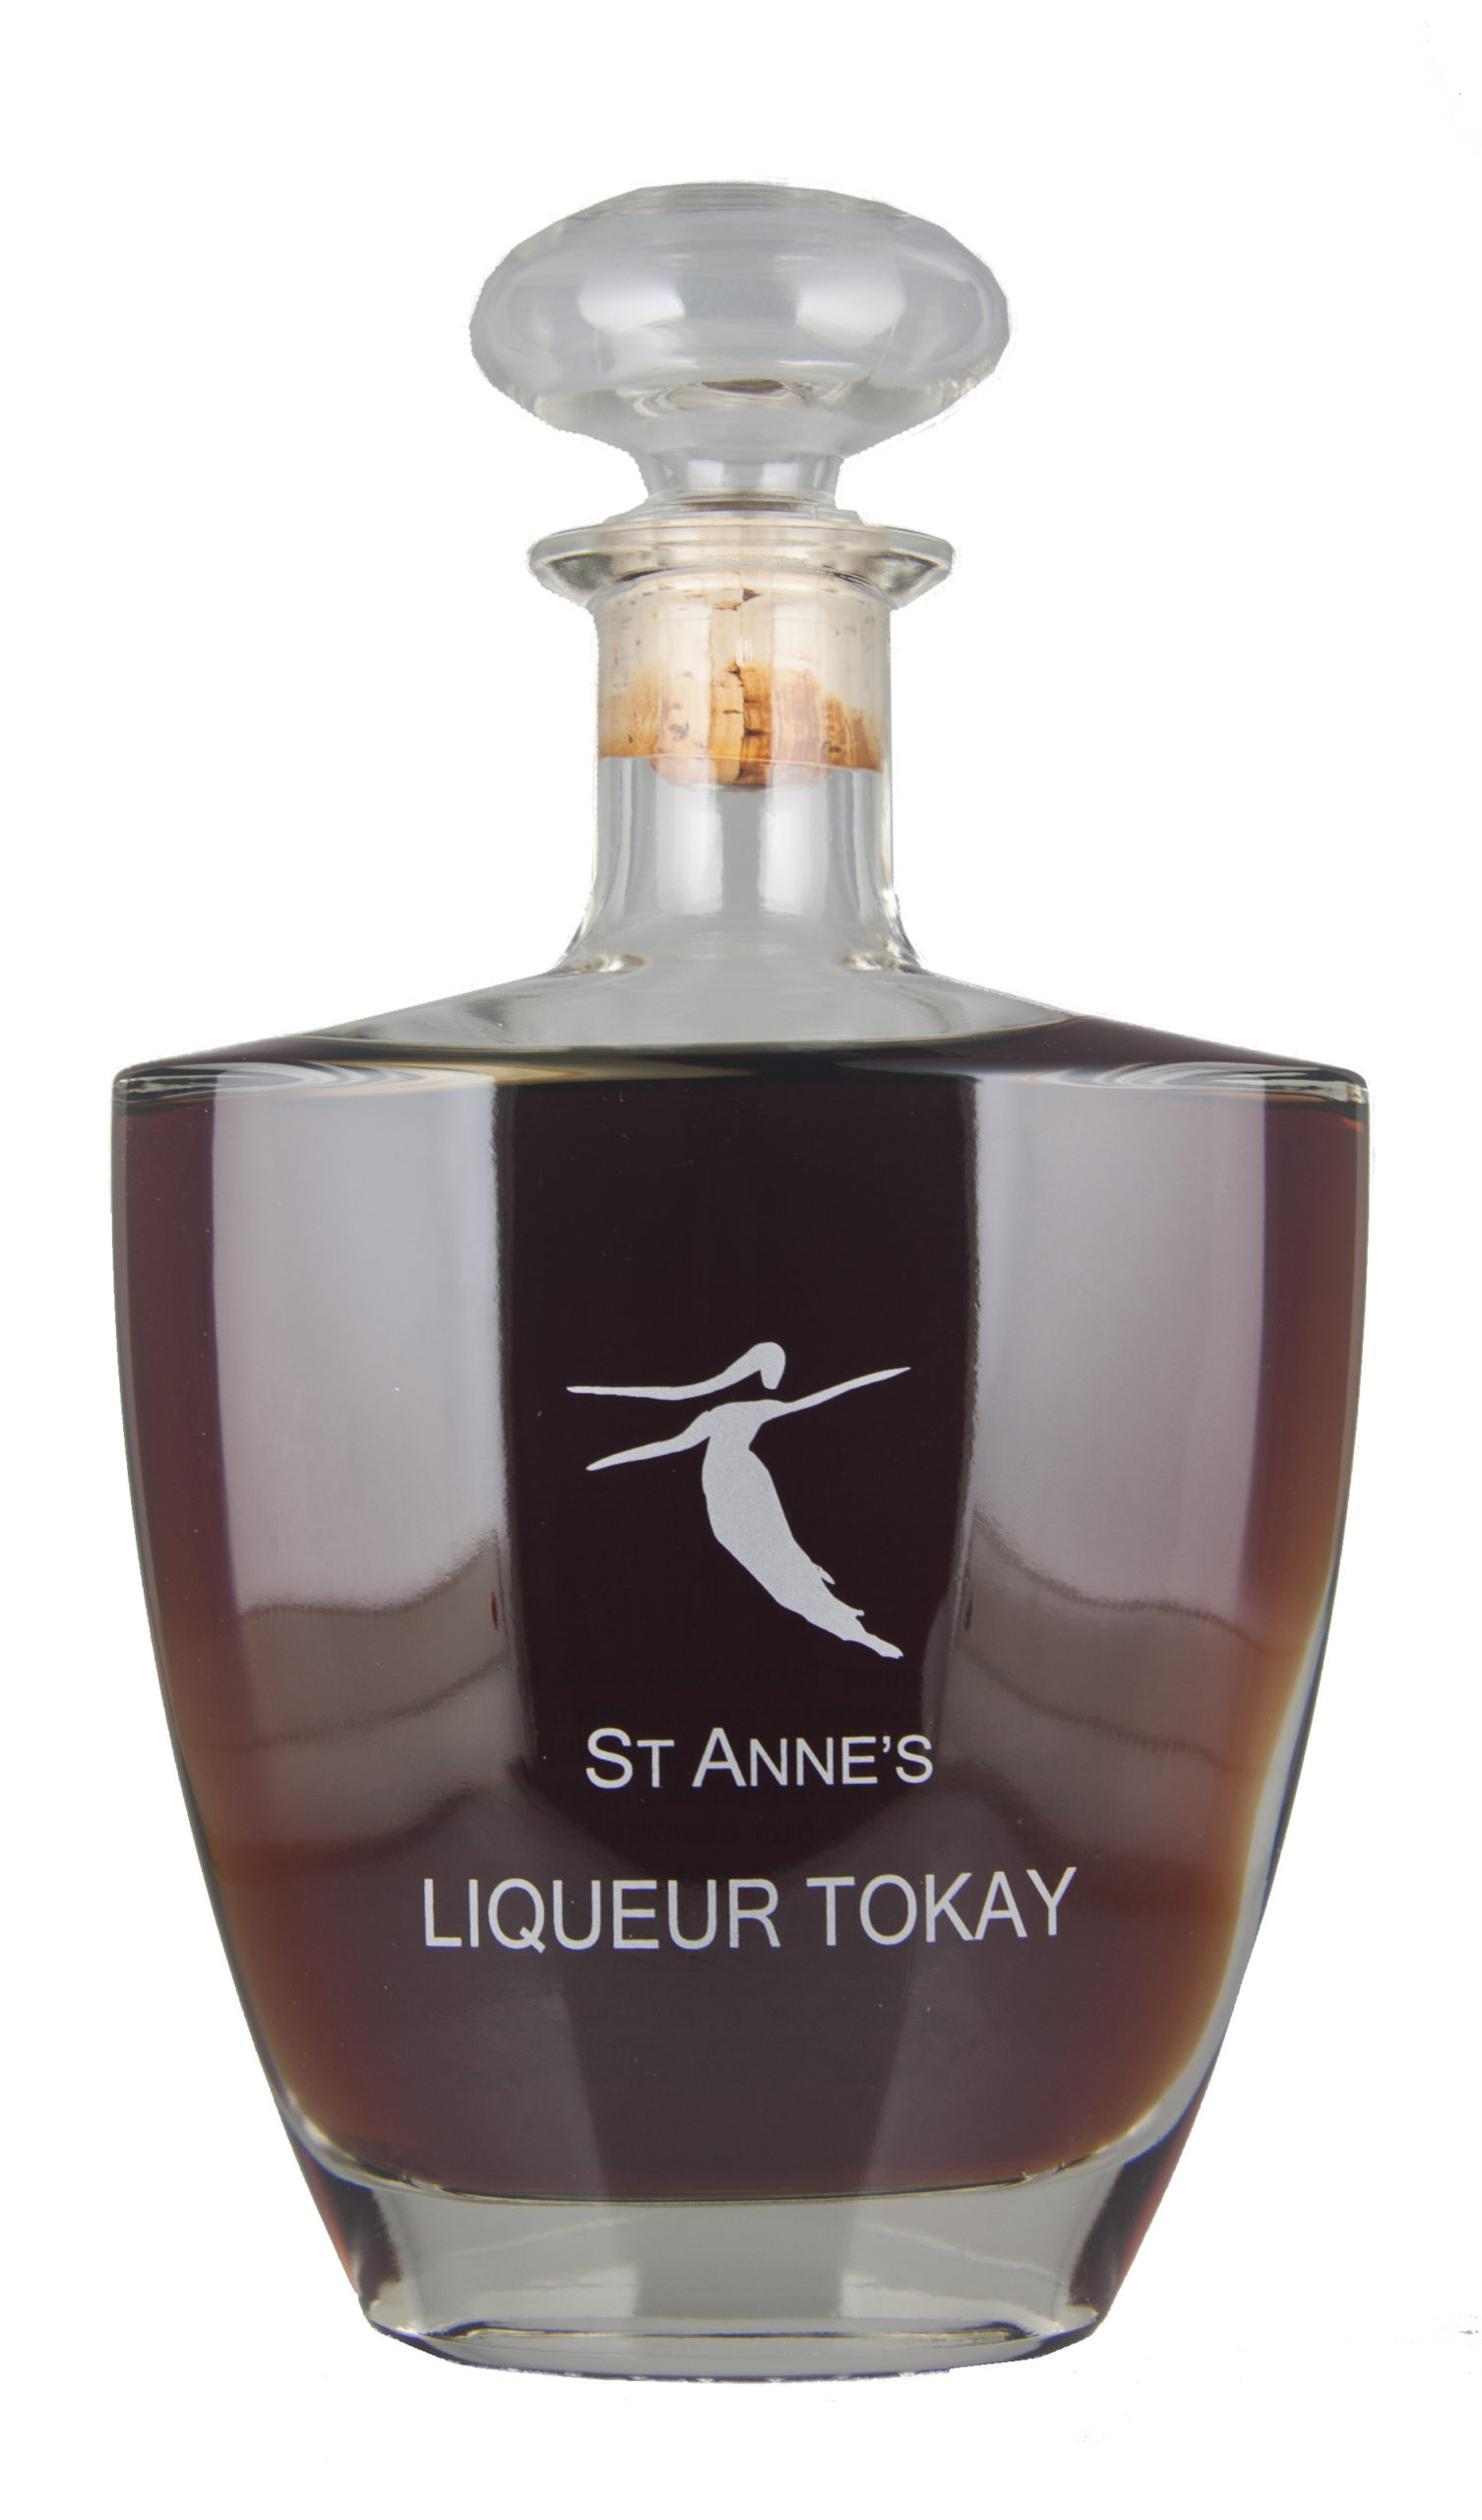 St Annes Liqueur Tokay Decanter